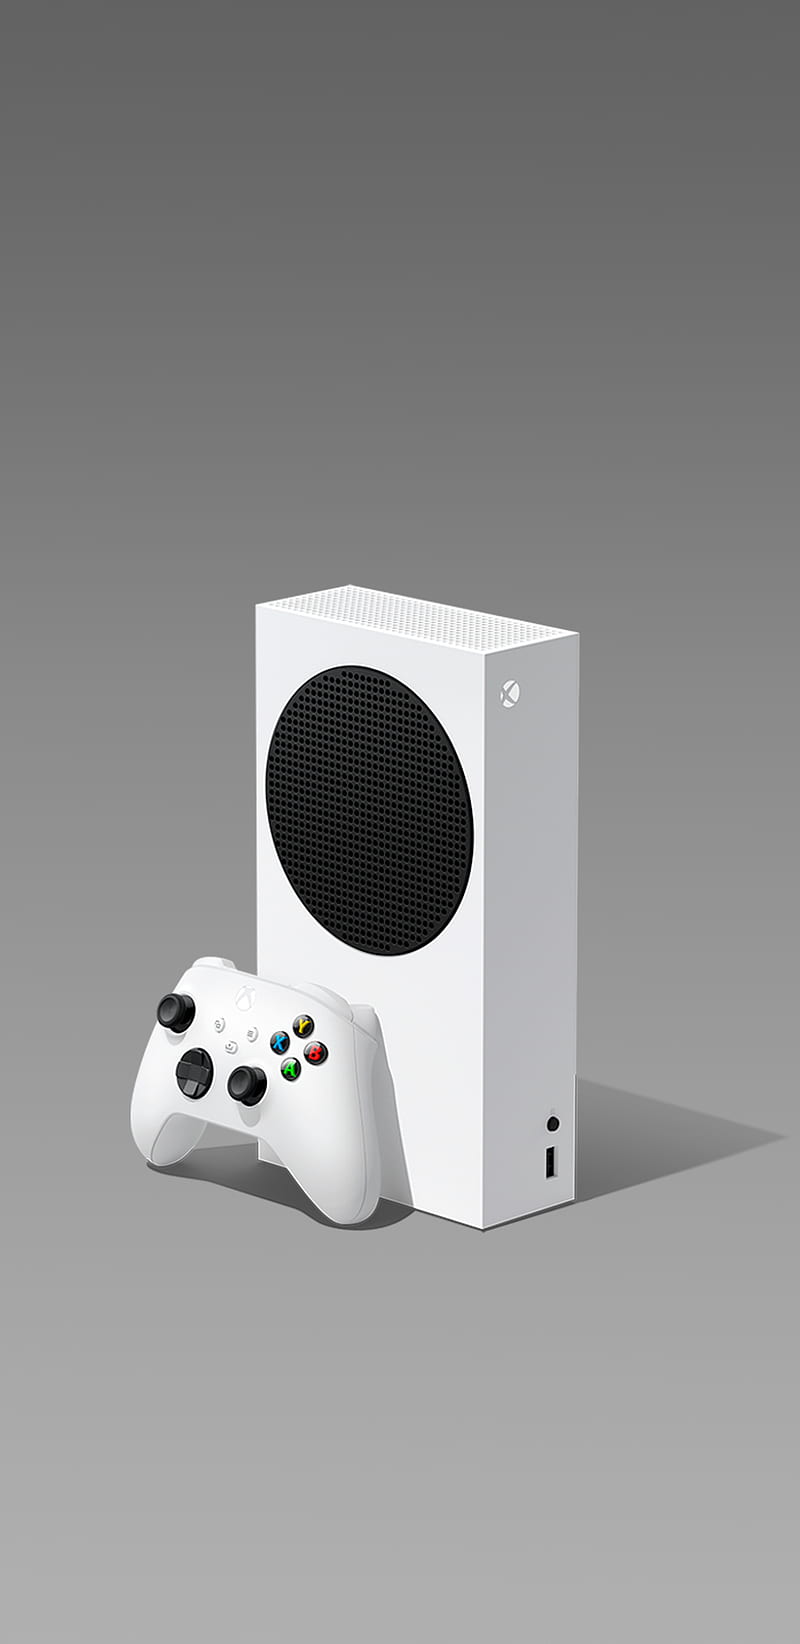 Xbox Series S: Trải nghiệm chơi game tuyệt vời với Xbox Series S, sản phẩm mới nhất của Microsoft. Hình ảnh sắc nét và âm thanh chất lượng cao sẽ đưa bạn đến những thế giới ảo thú vị nhất.